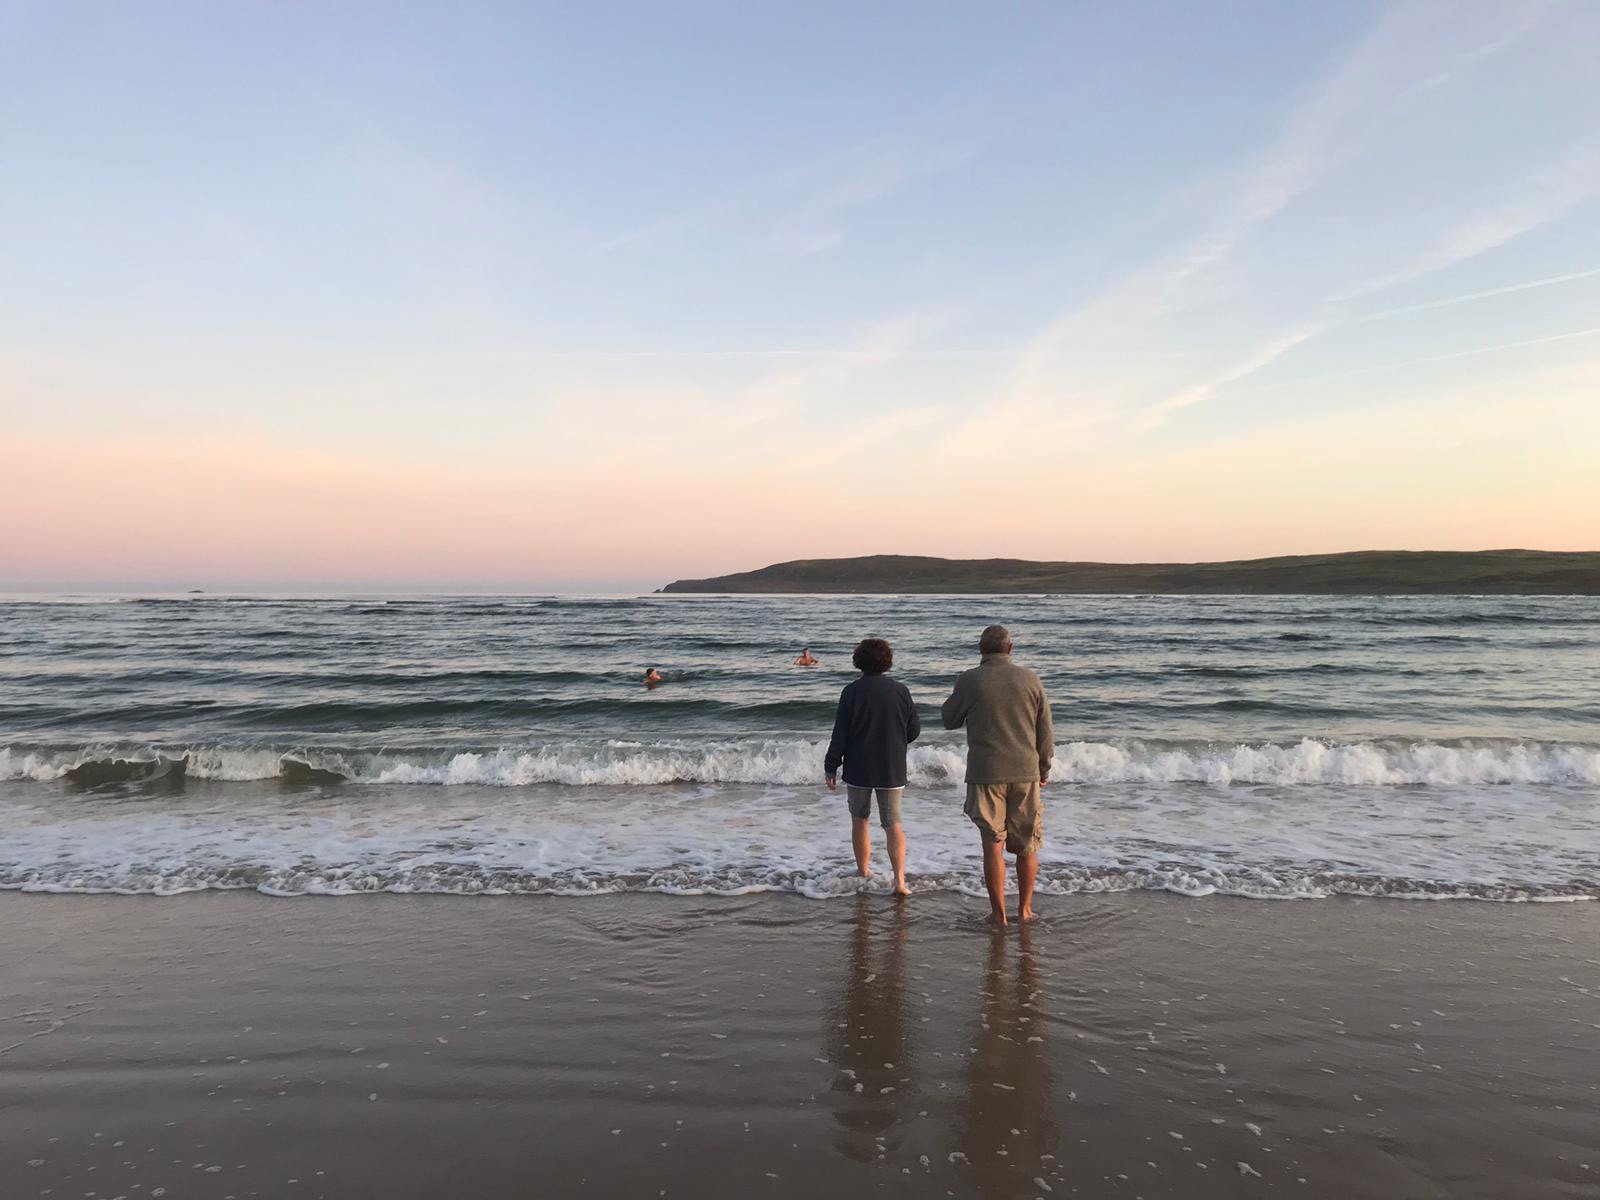 A couple enjoying a sunrise on the beach